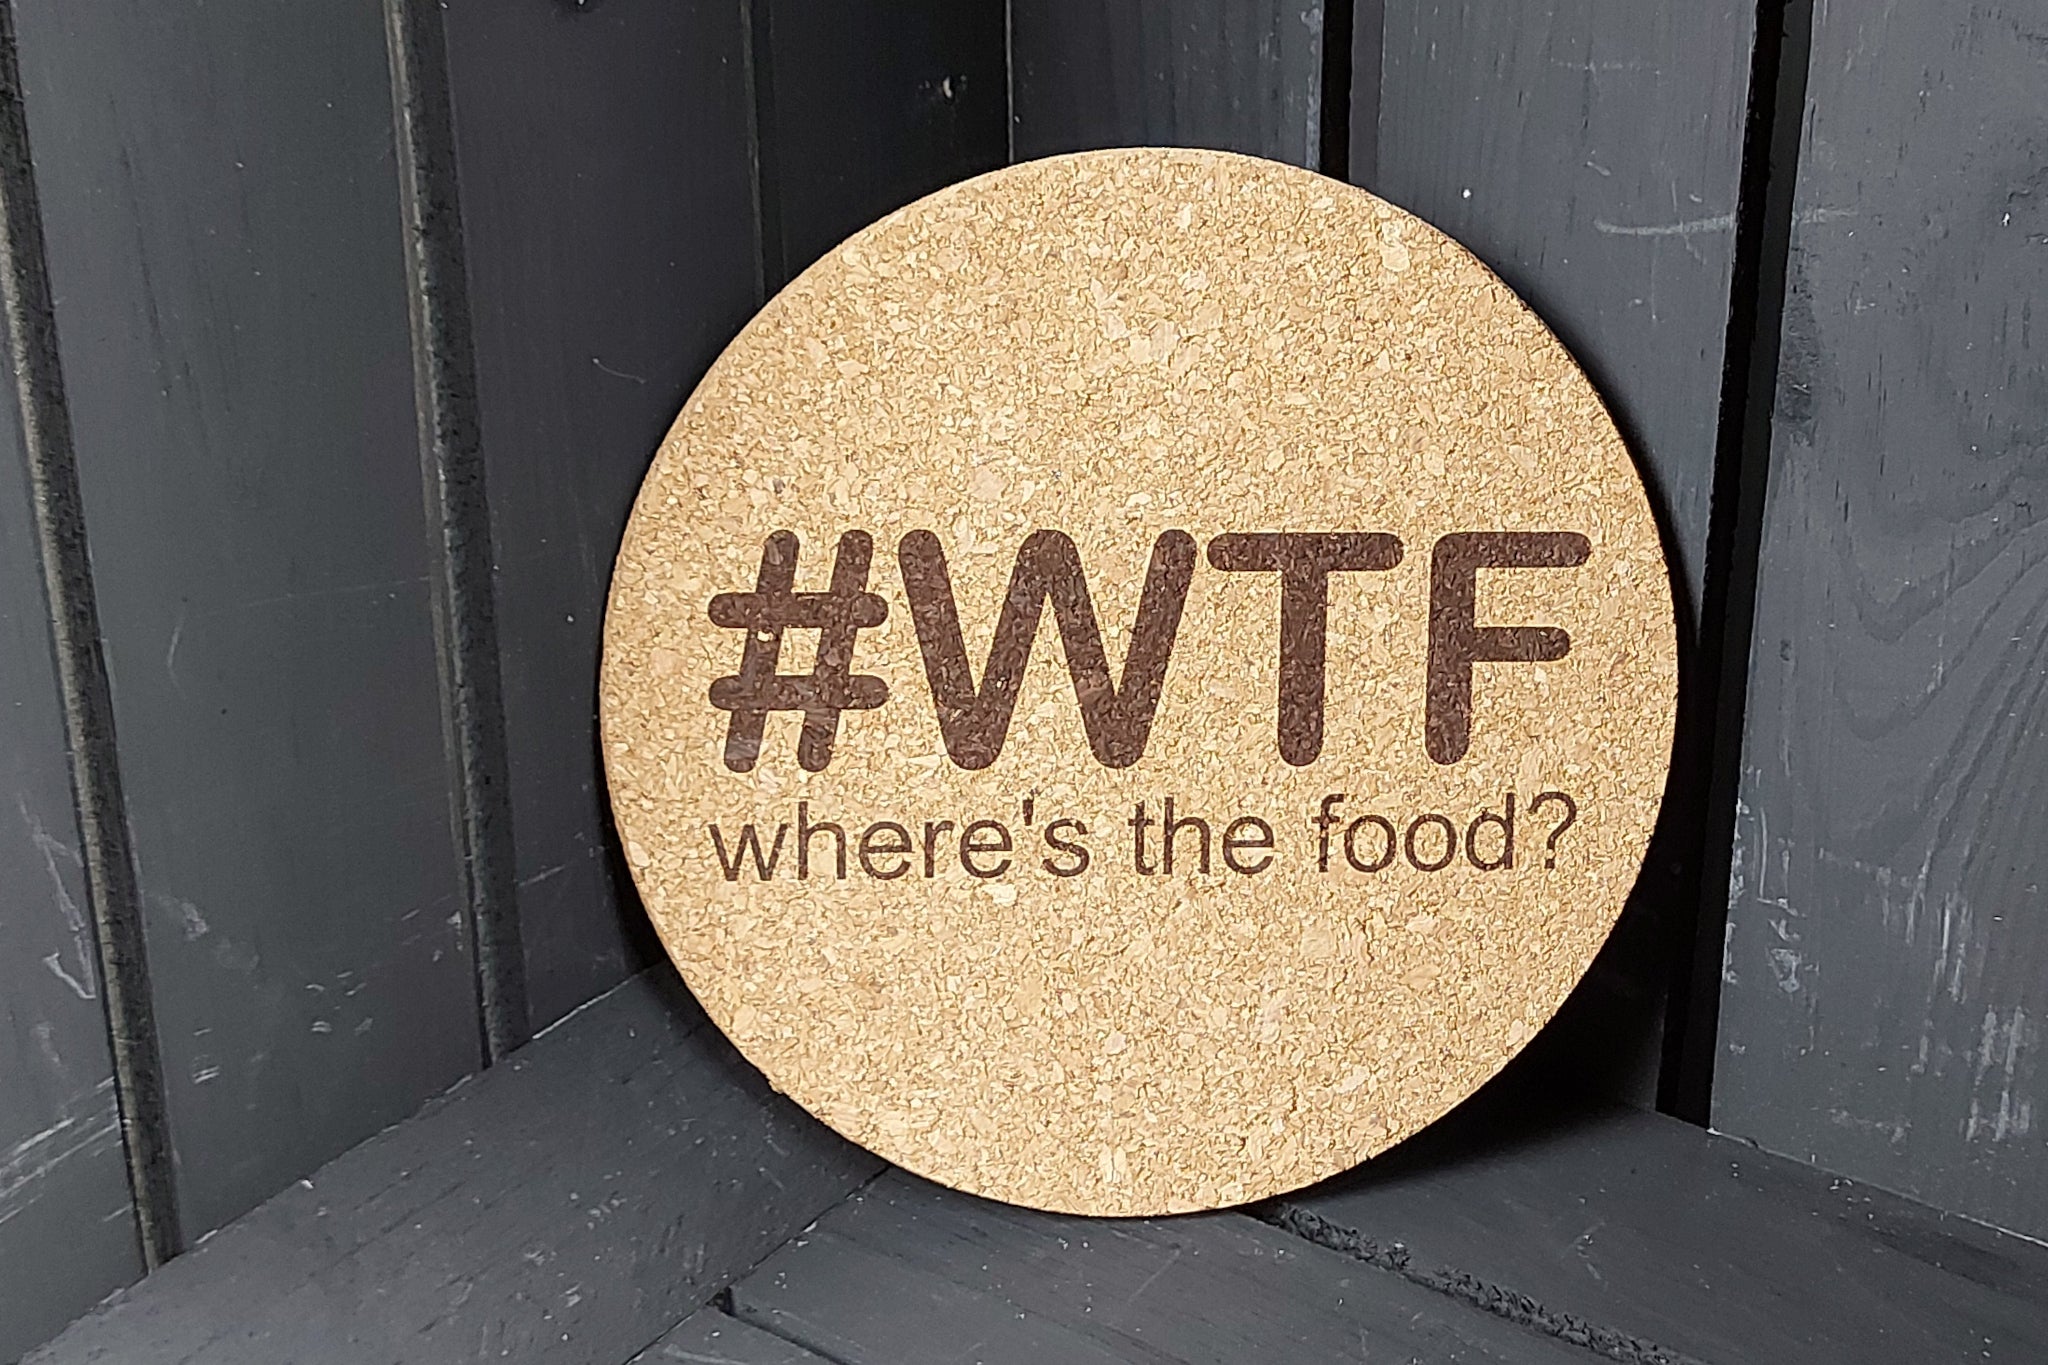 Kurken onderlegger. Onderlegger voor potten en pannen met gravure '#WTF, where's the food?'.